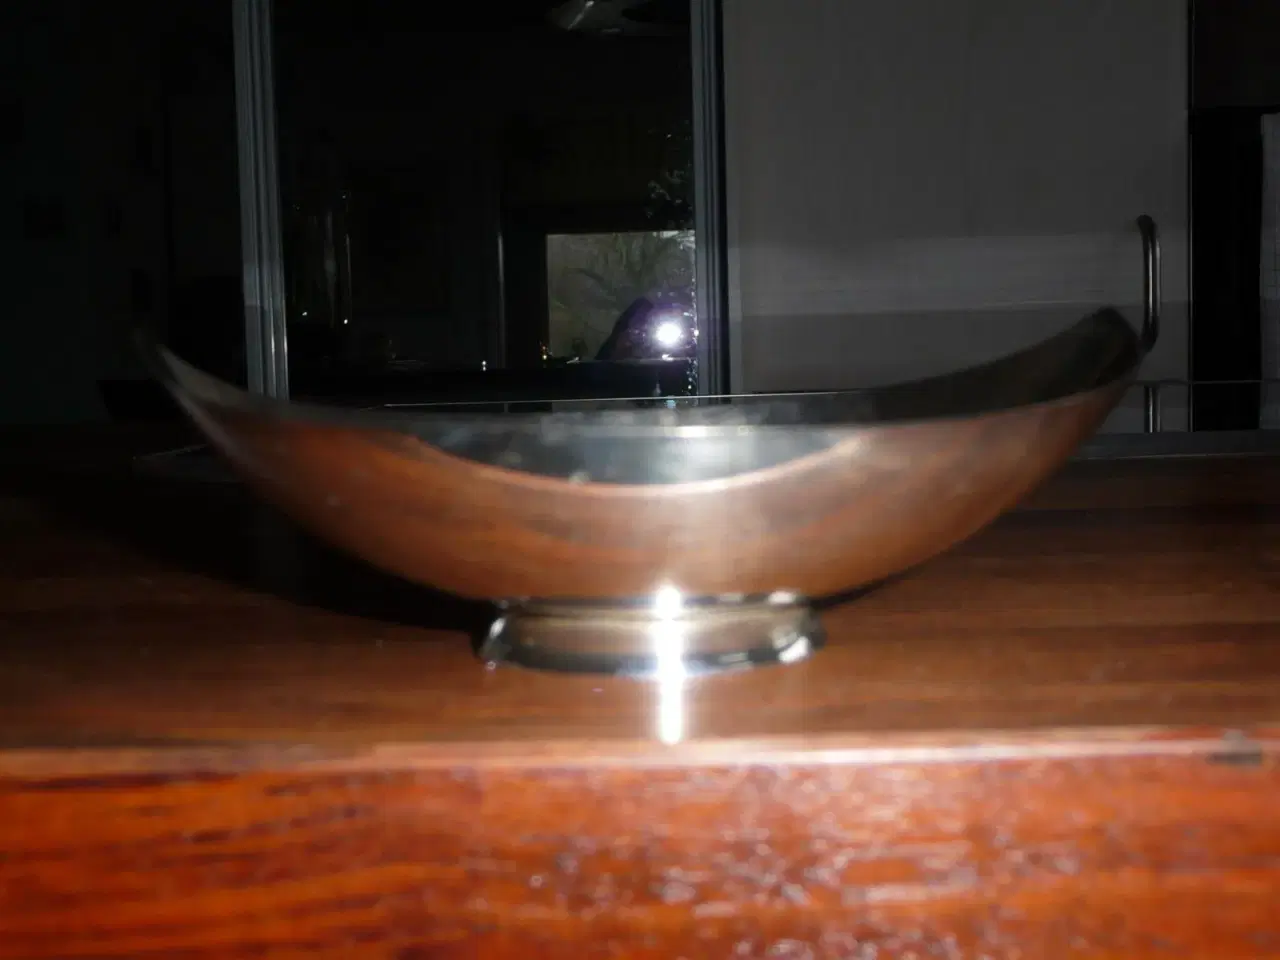 Billede 3 - sølv plet skål, lidt oval, 2 spis kanter